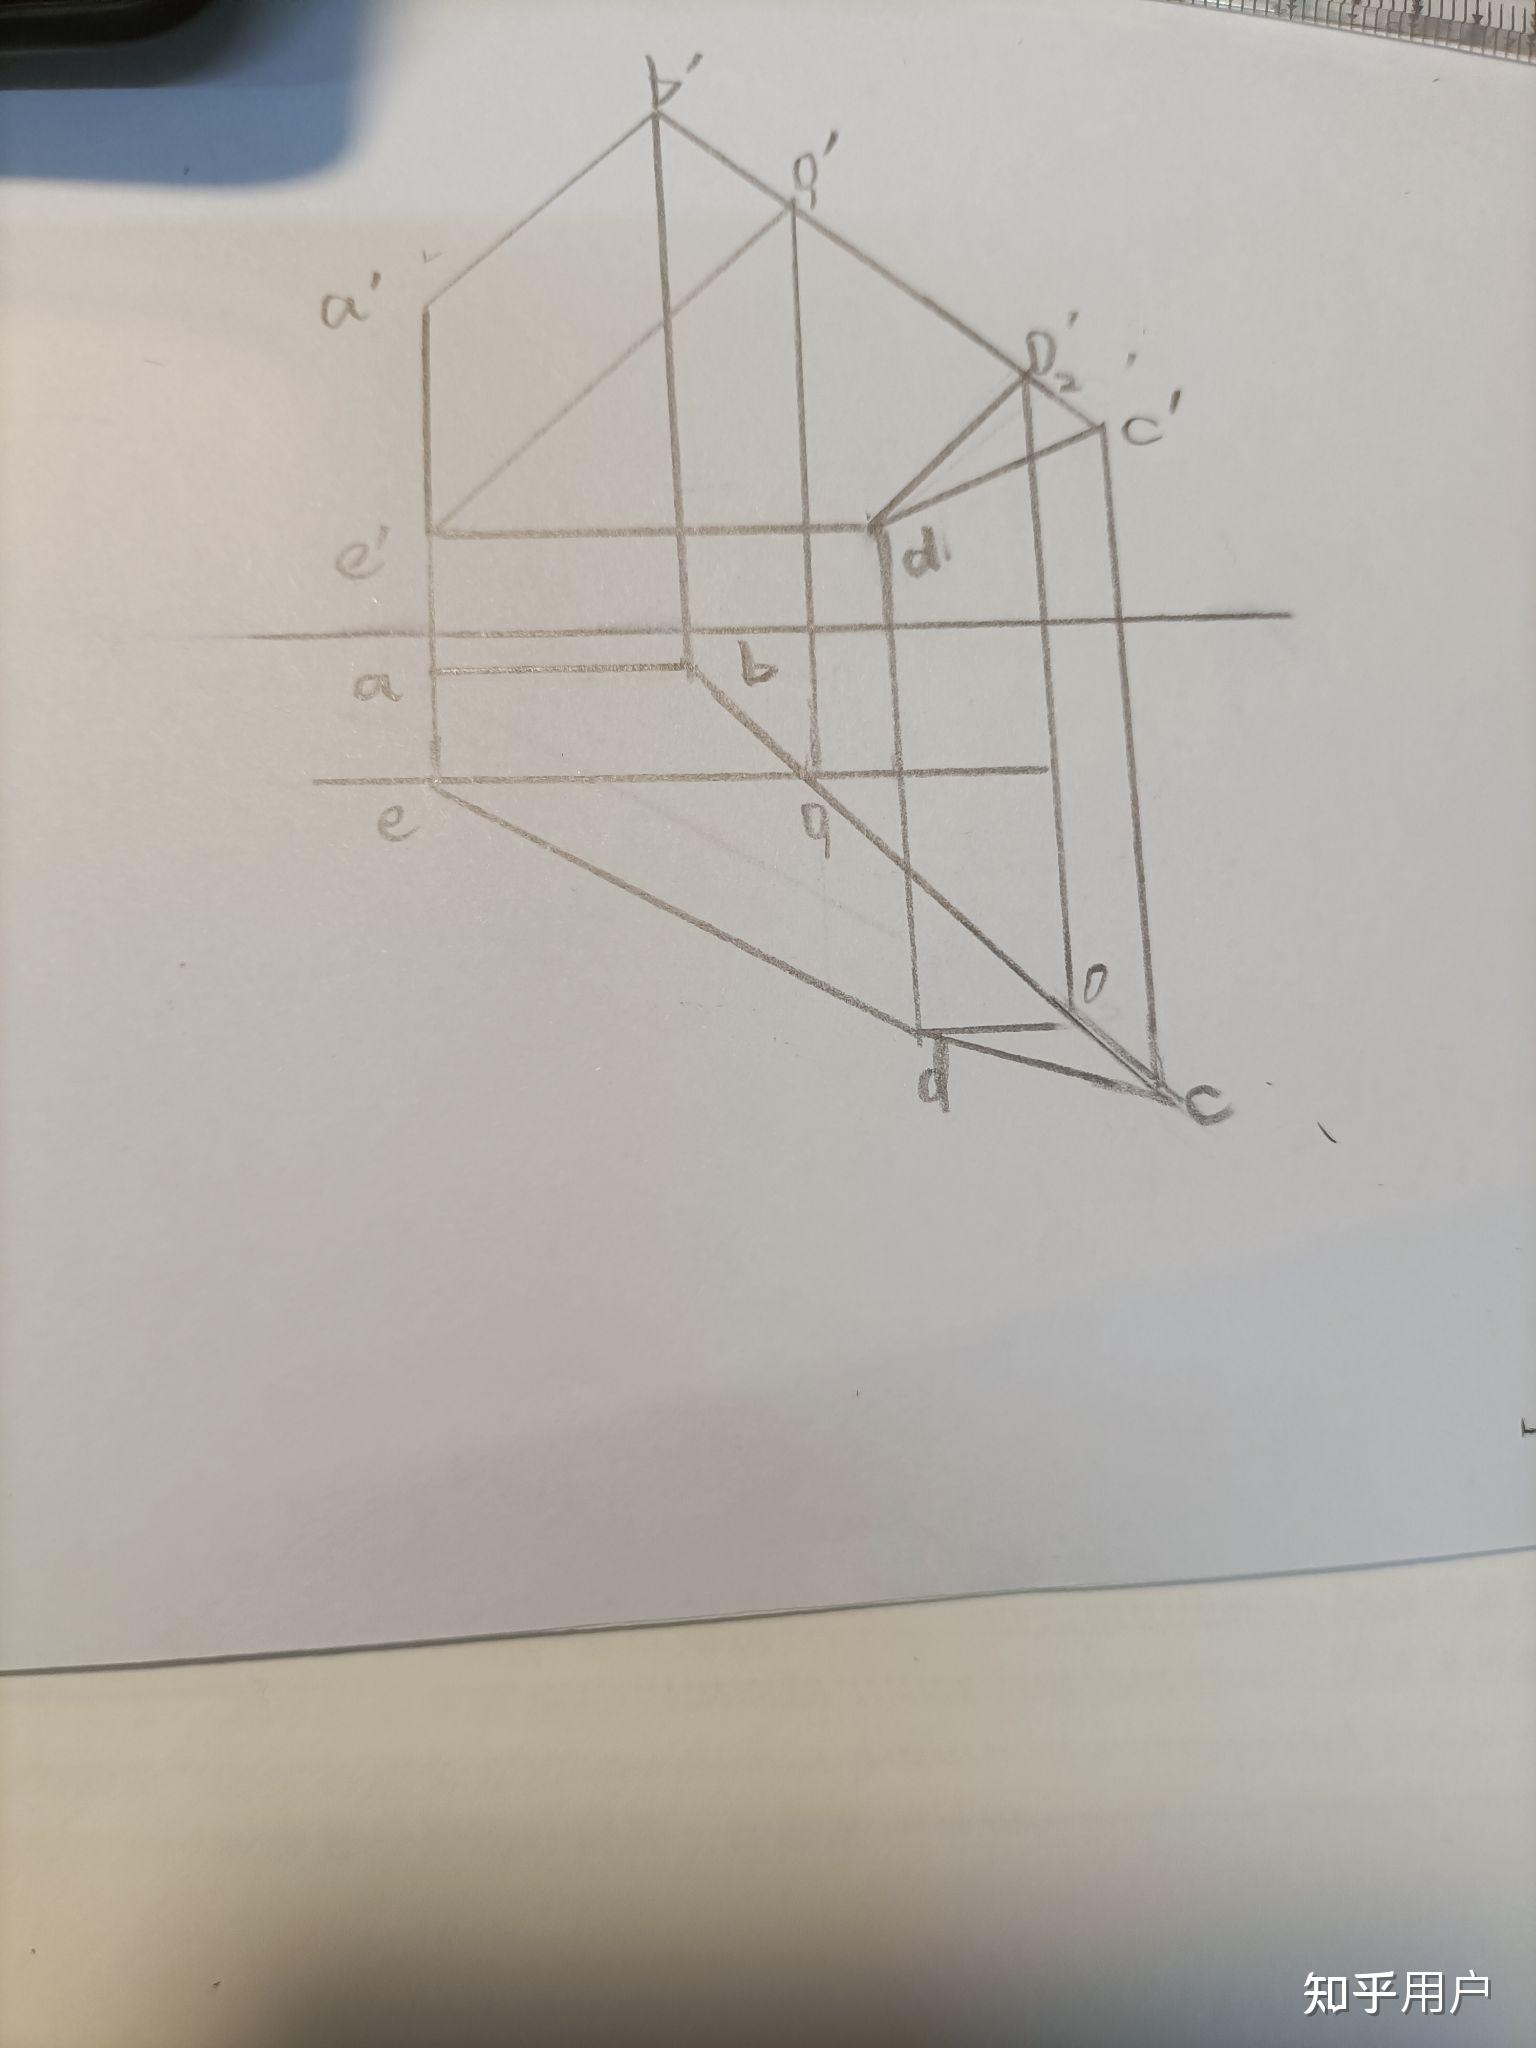 已知ab为正平线,de为水平线,完成五边形abcde的水平投影怎么画啊?